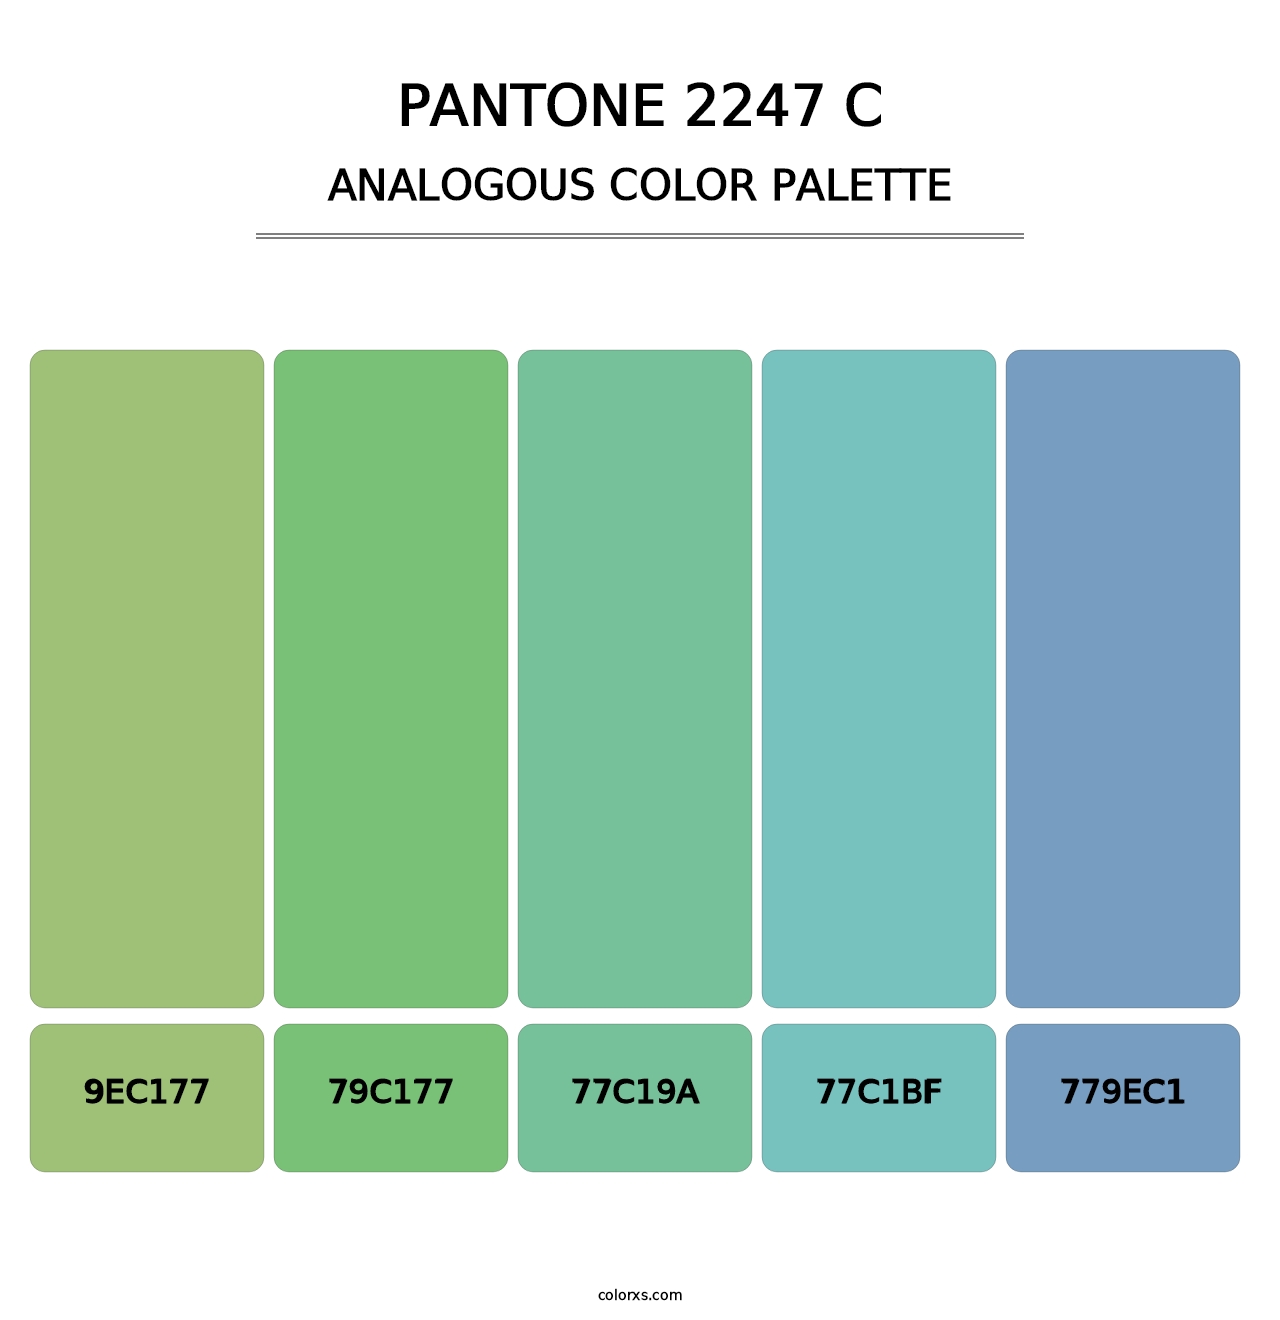 PANTONE 2247 C - Analogous Color Palette